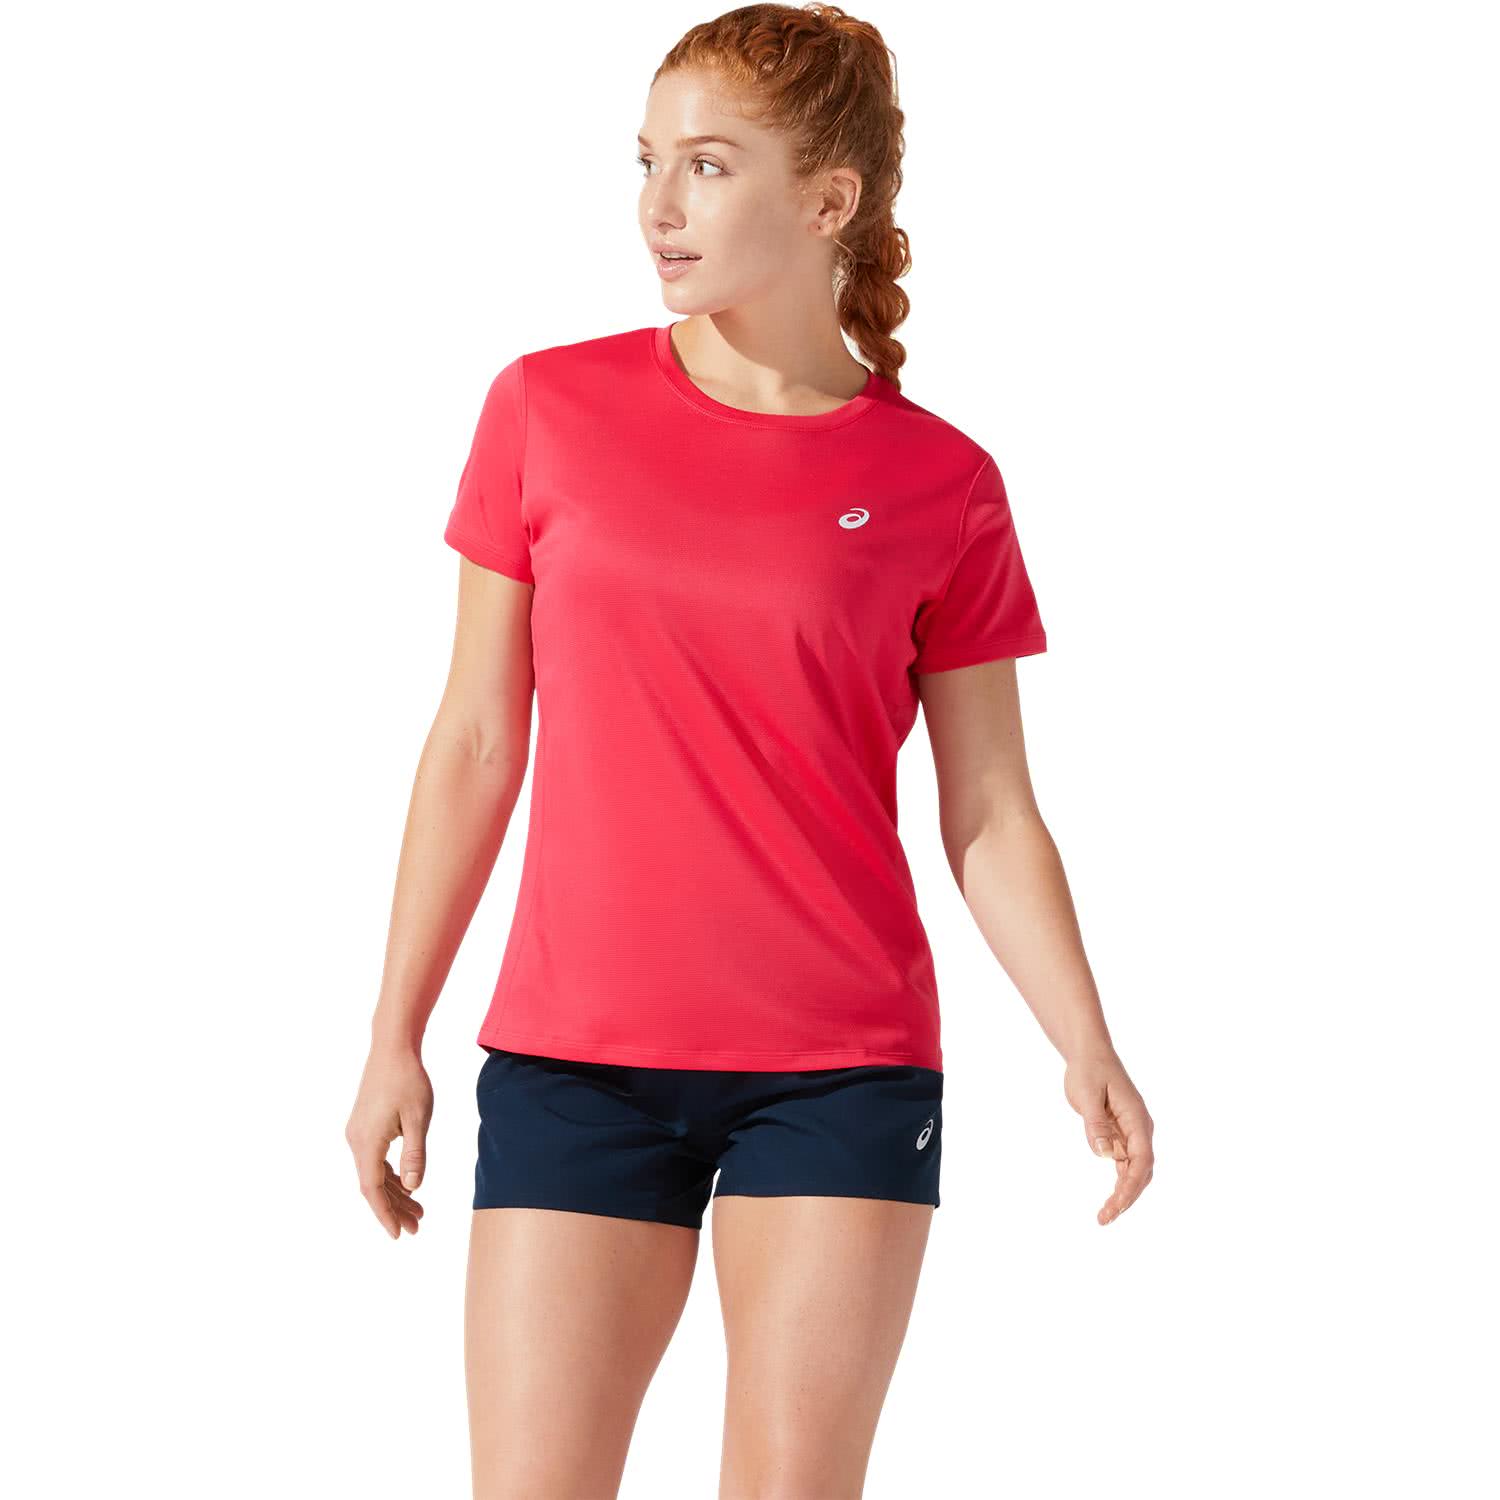 Asics Damen Laufshirt Core SS Top 2012C335 | eBay